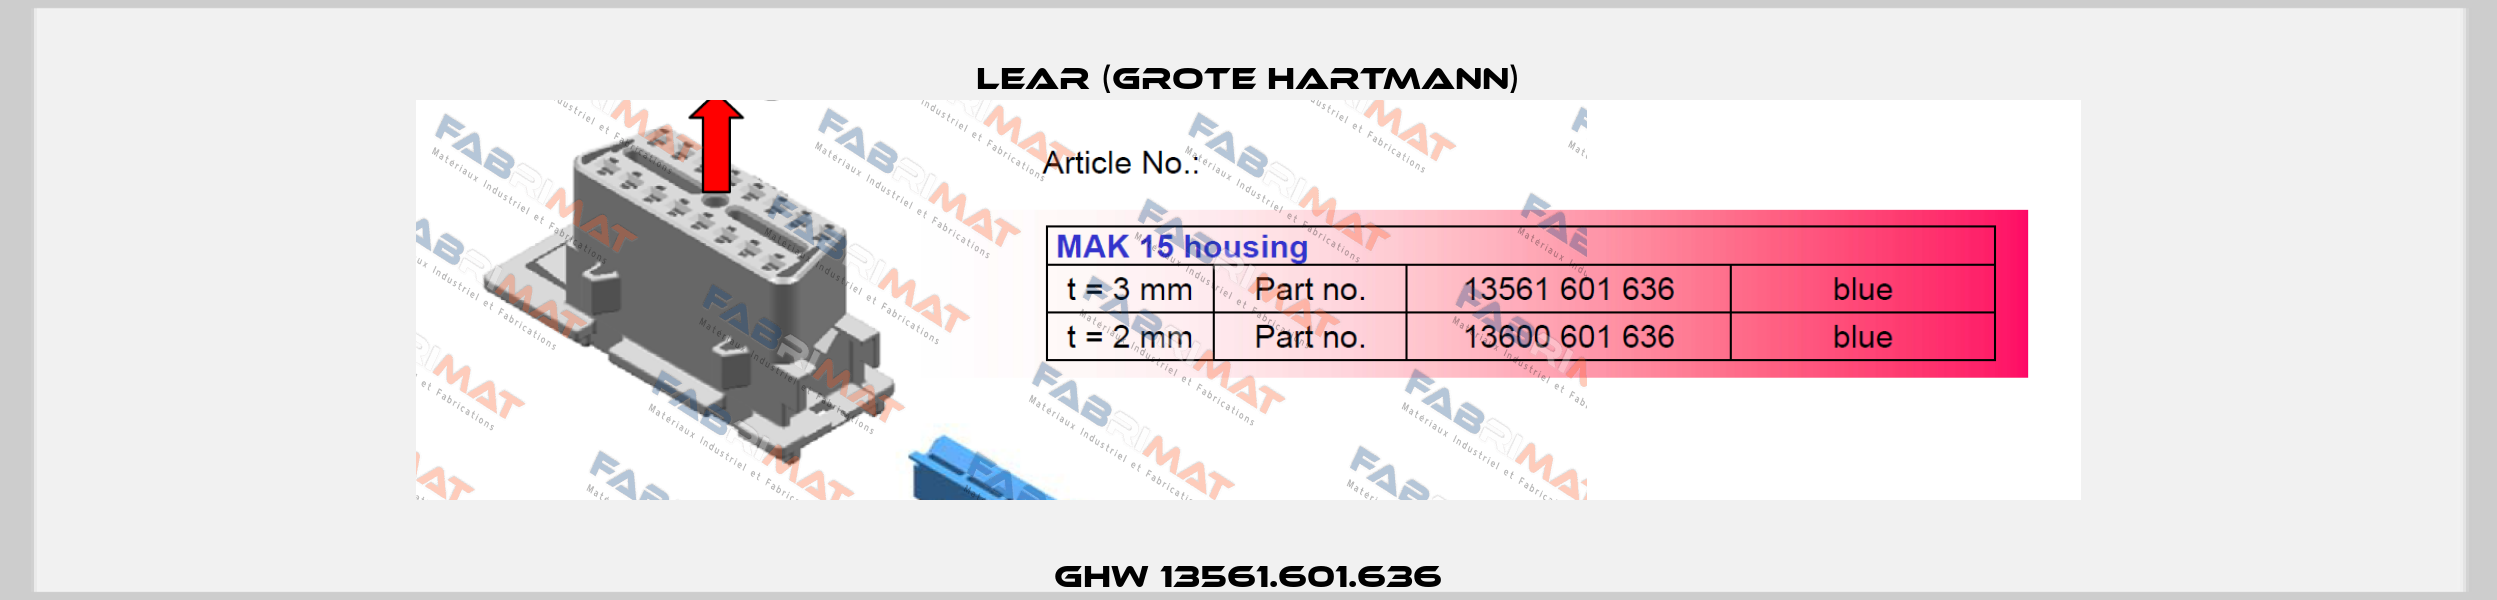 GHW 13561.601.636 Lear (Grote Hartmann)